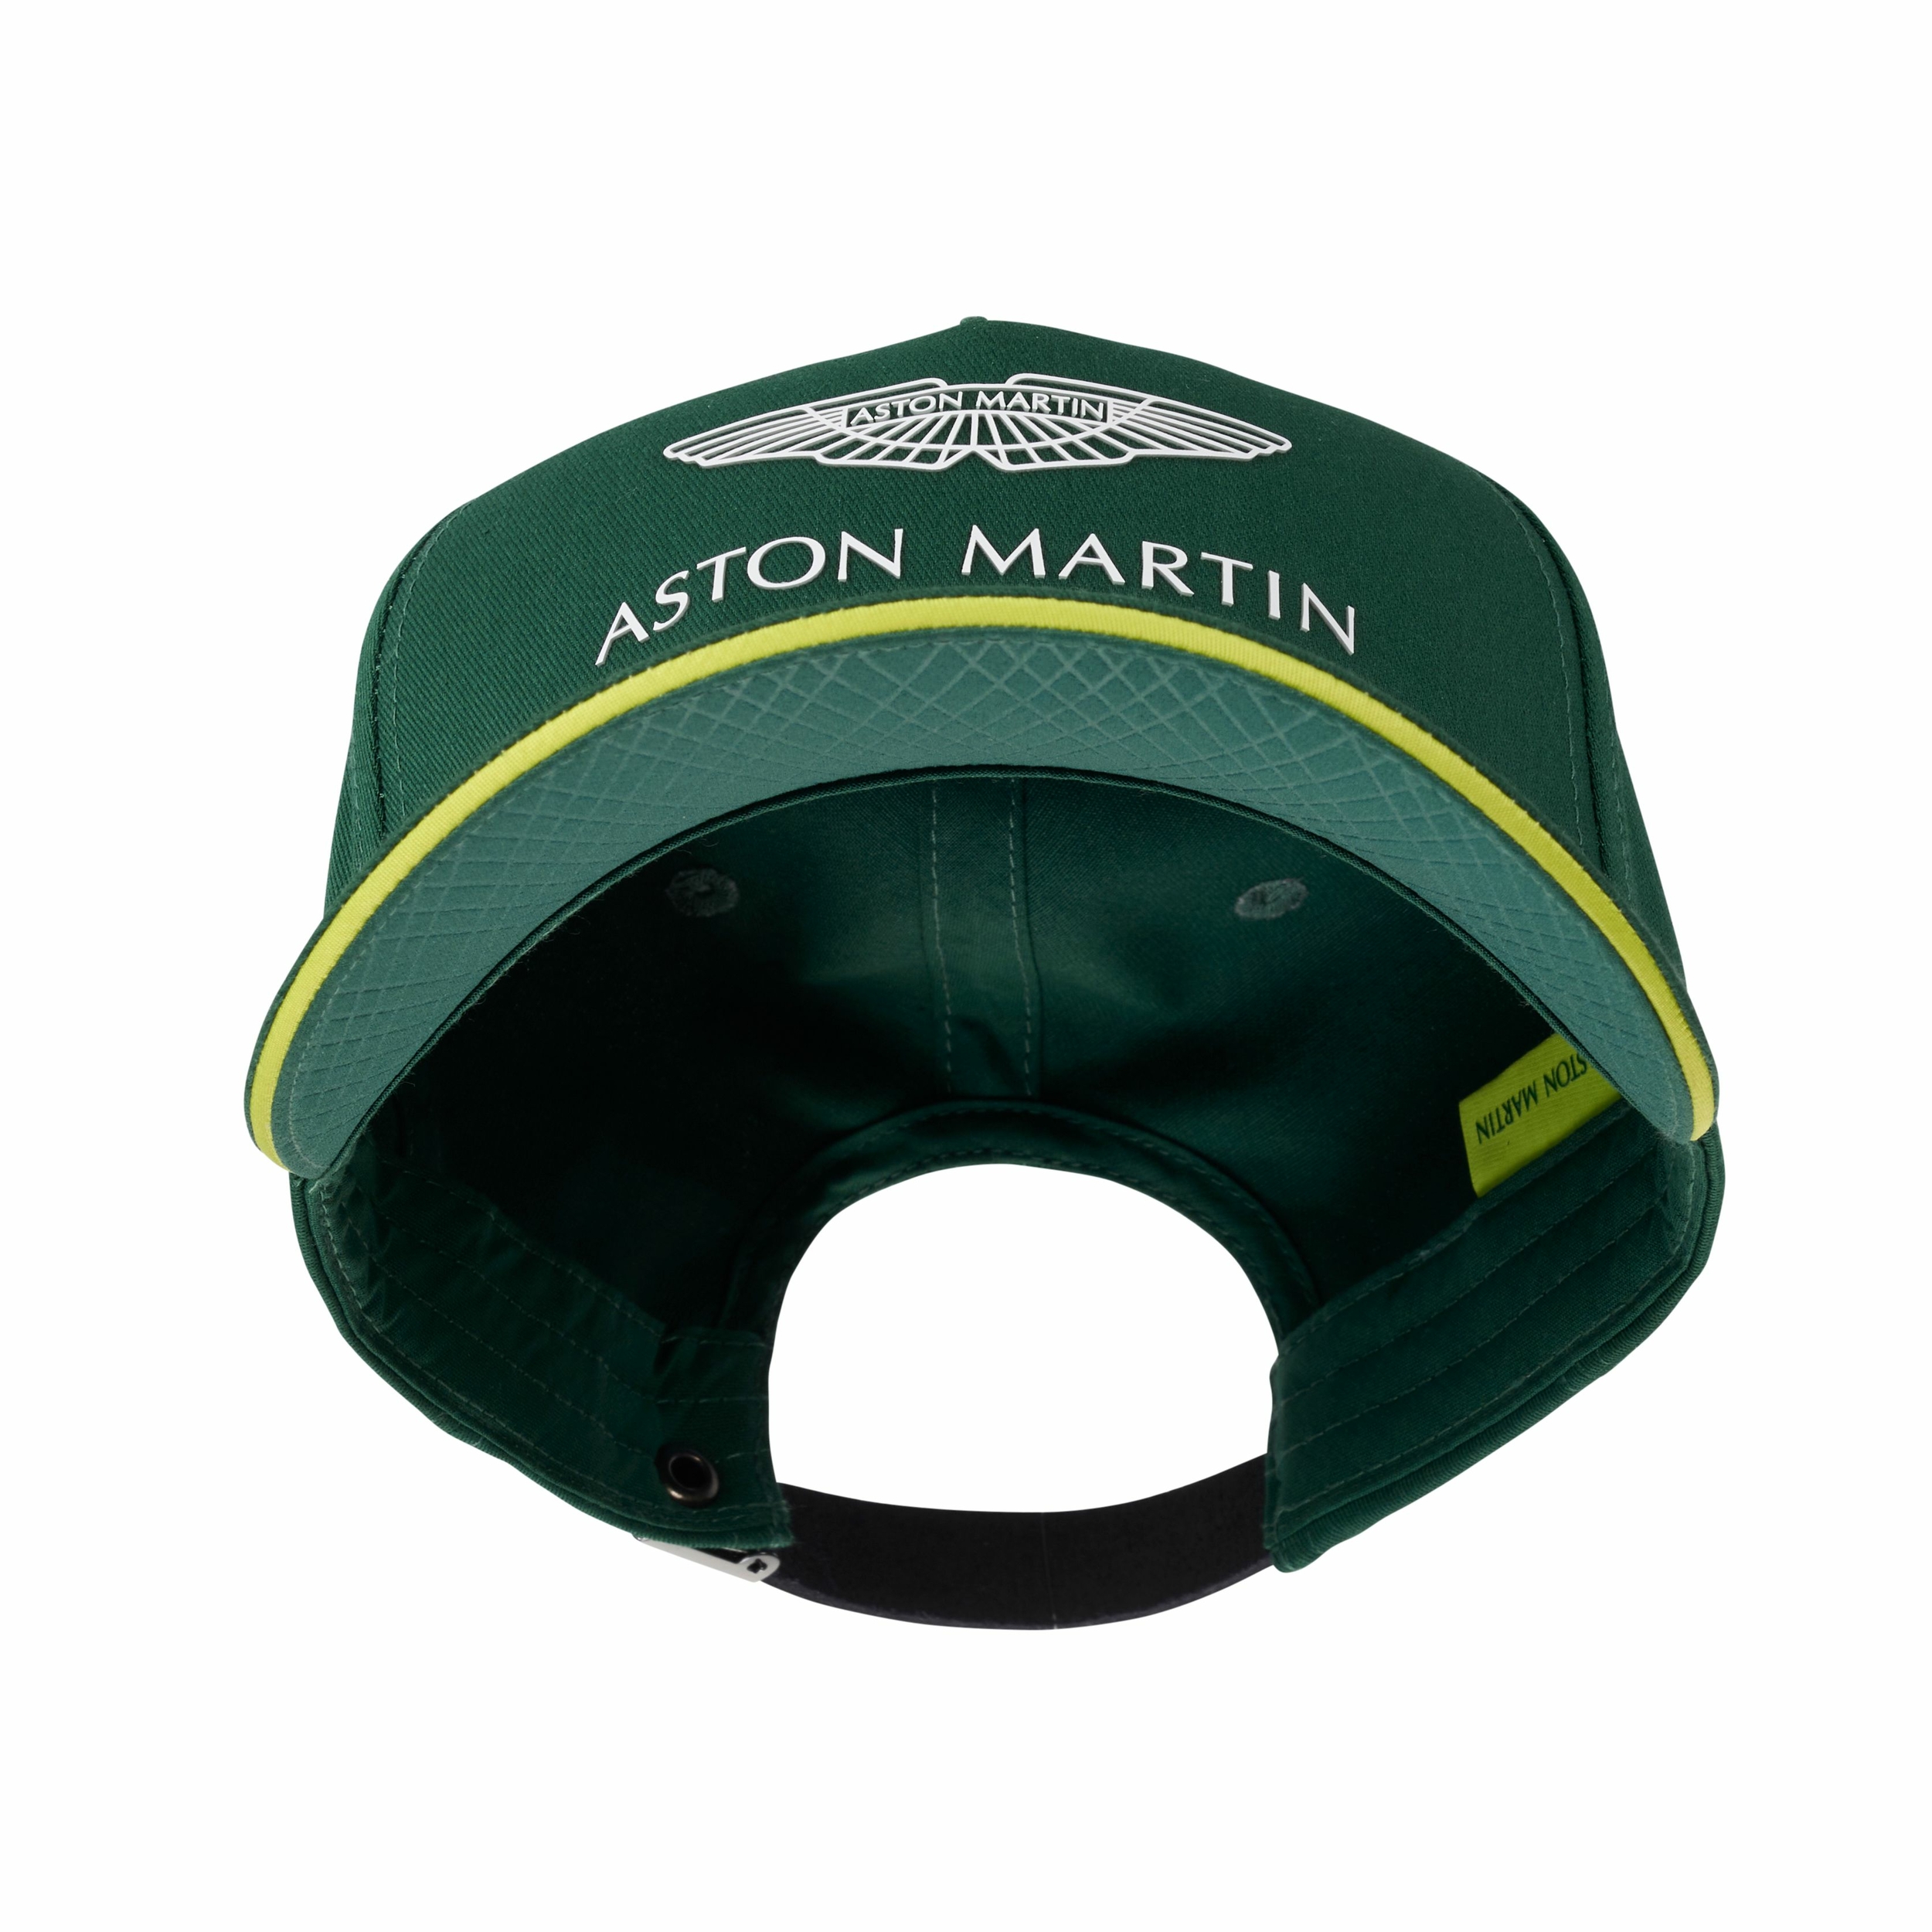 Casquette enfant Aston Martin F1 vert vue intérieure